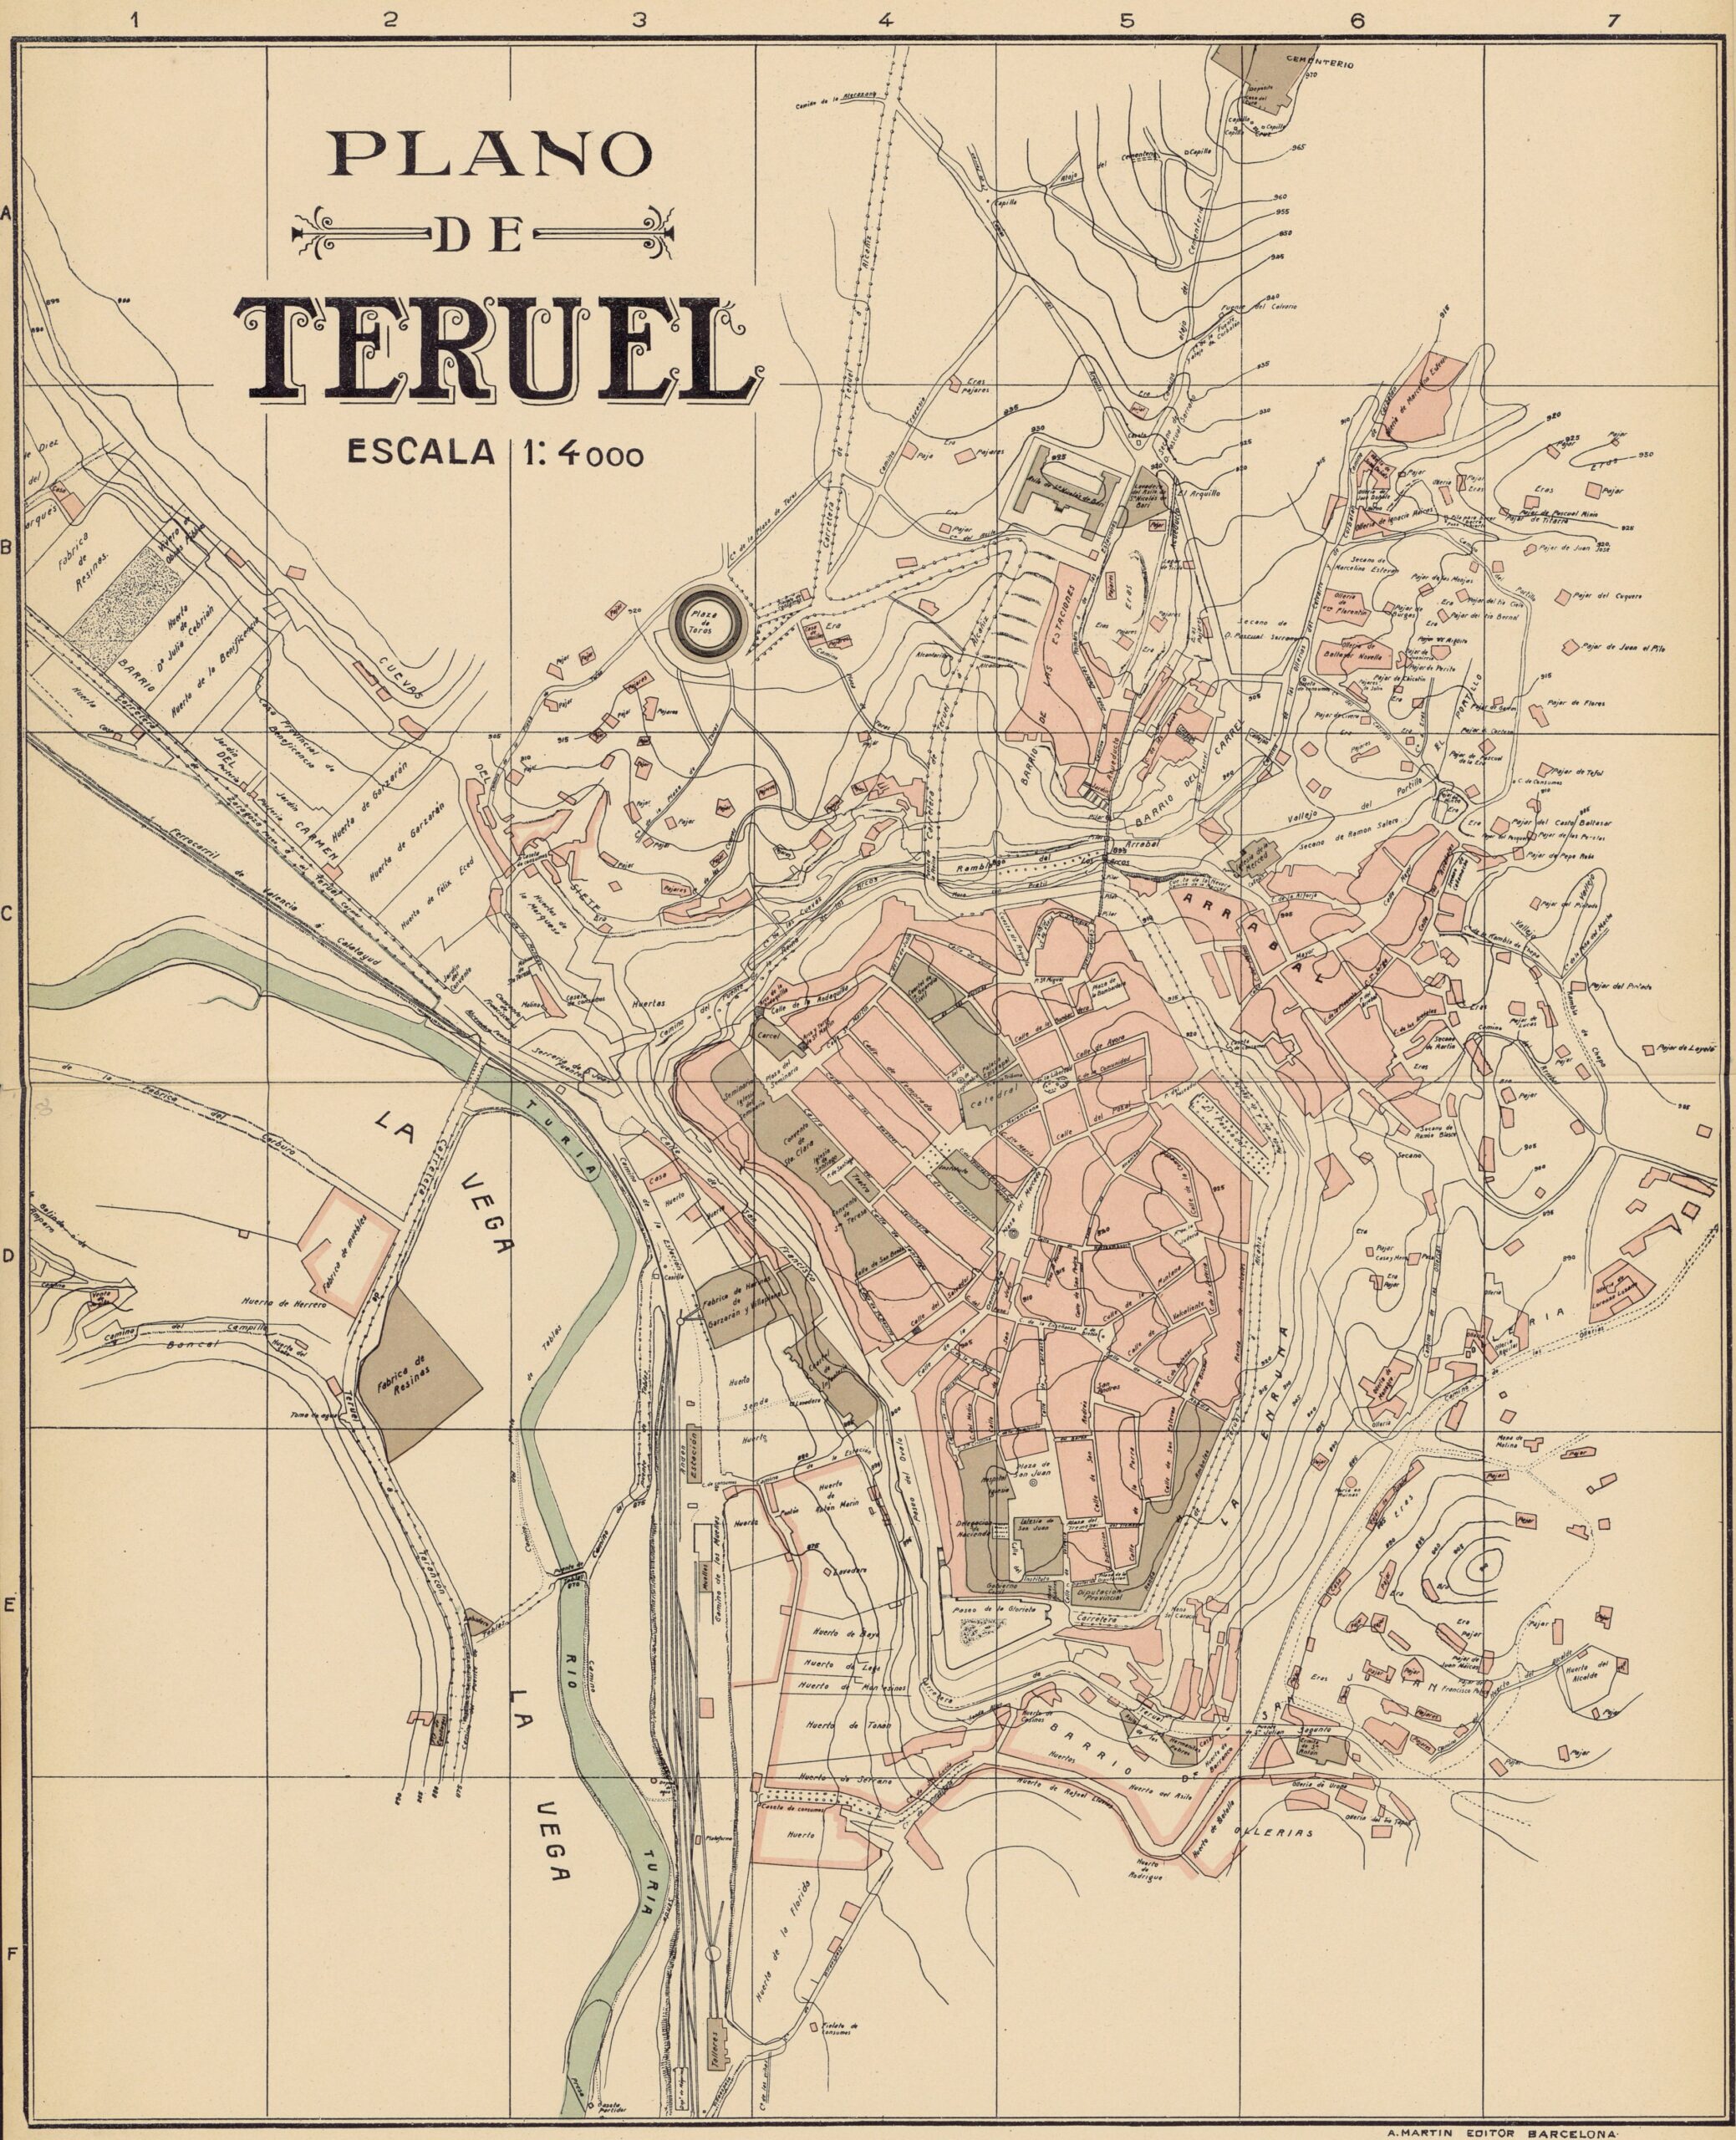 Plano de Teruel de Alberto Martín (1910)